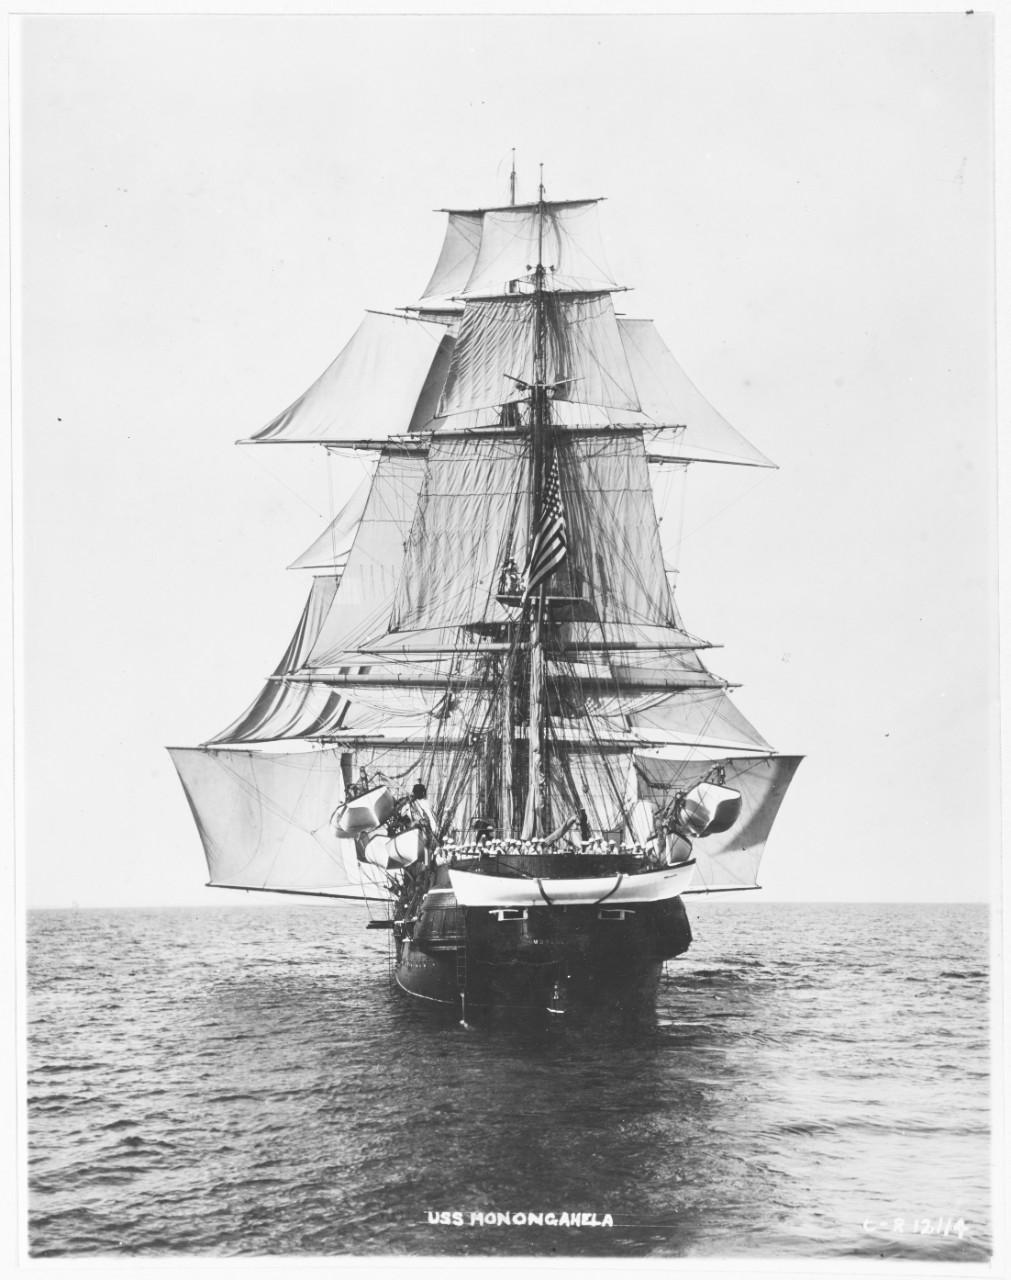 USS MONONGAHELA, 1863-1908